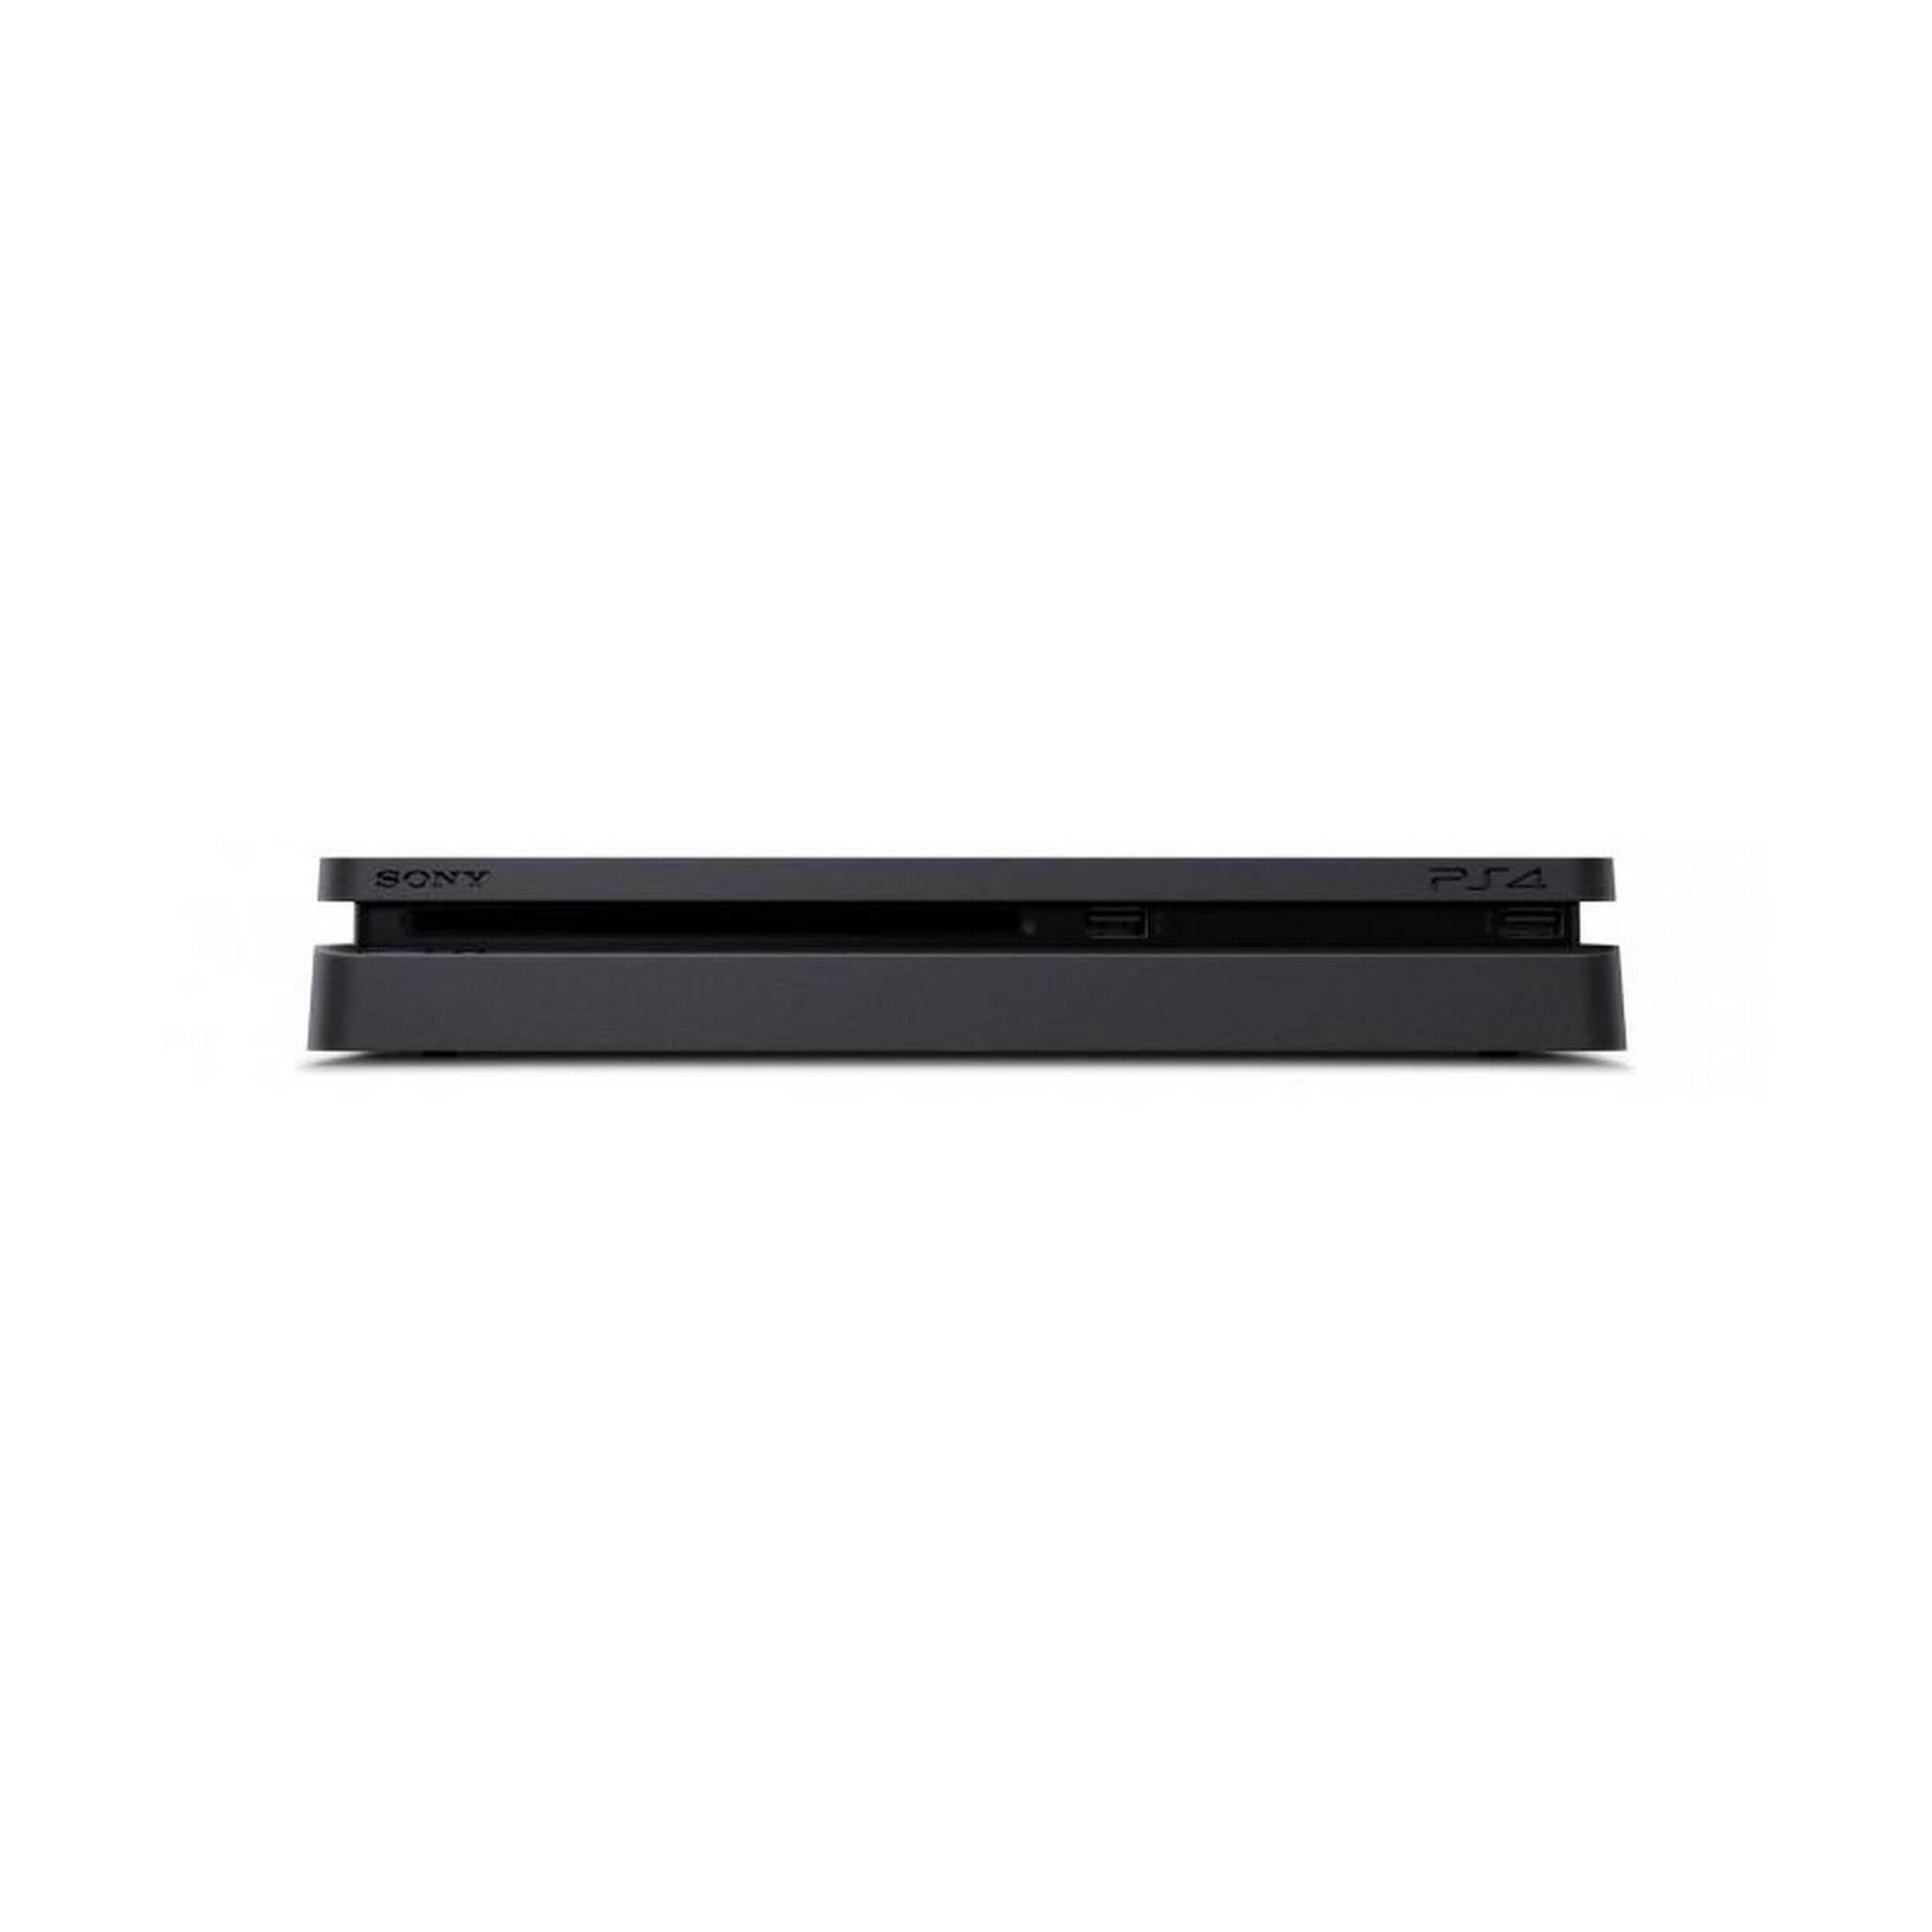 جهاز بلاي ستيشن 4 النحيف 500 جيجابايت + لعبة جي تي سبورت + لعبة أنشارتد 4 + لعبة هورايزون زيرو داون + اشتراك بلاي ستيشن بلس لمدة 3 شهور+ ايصال لعبة فورت نايت